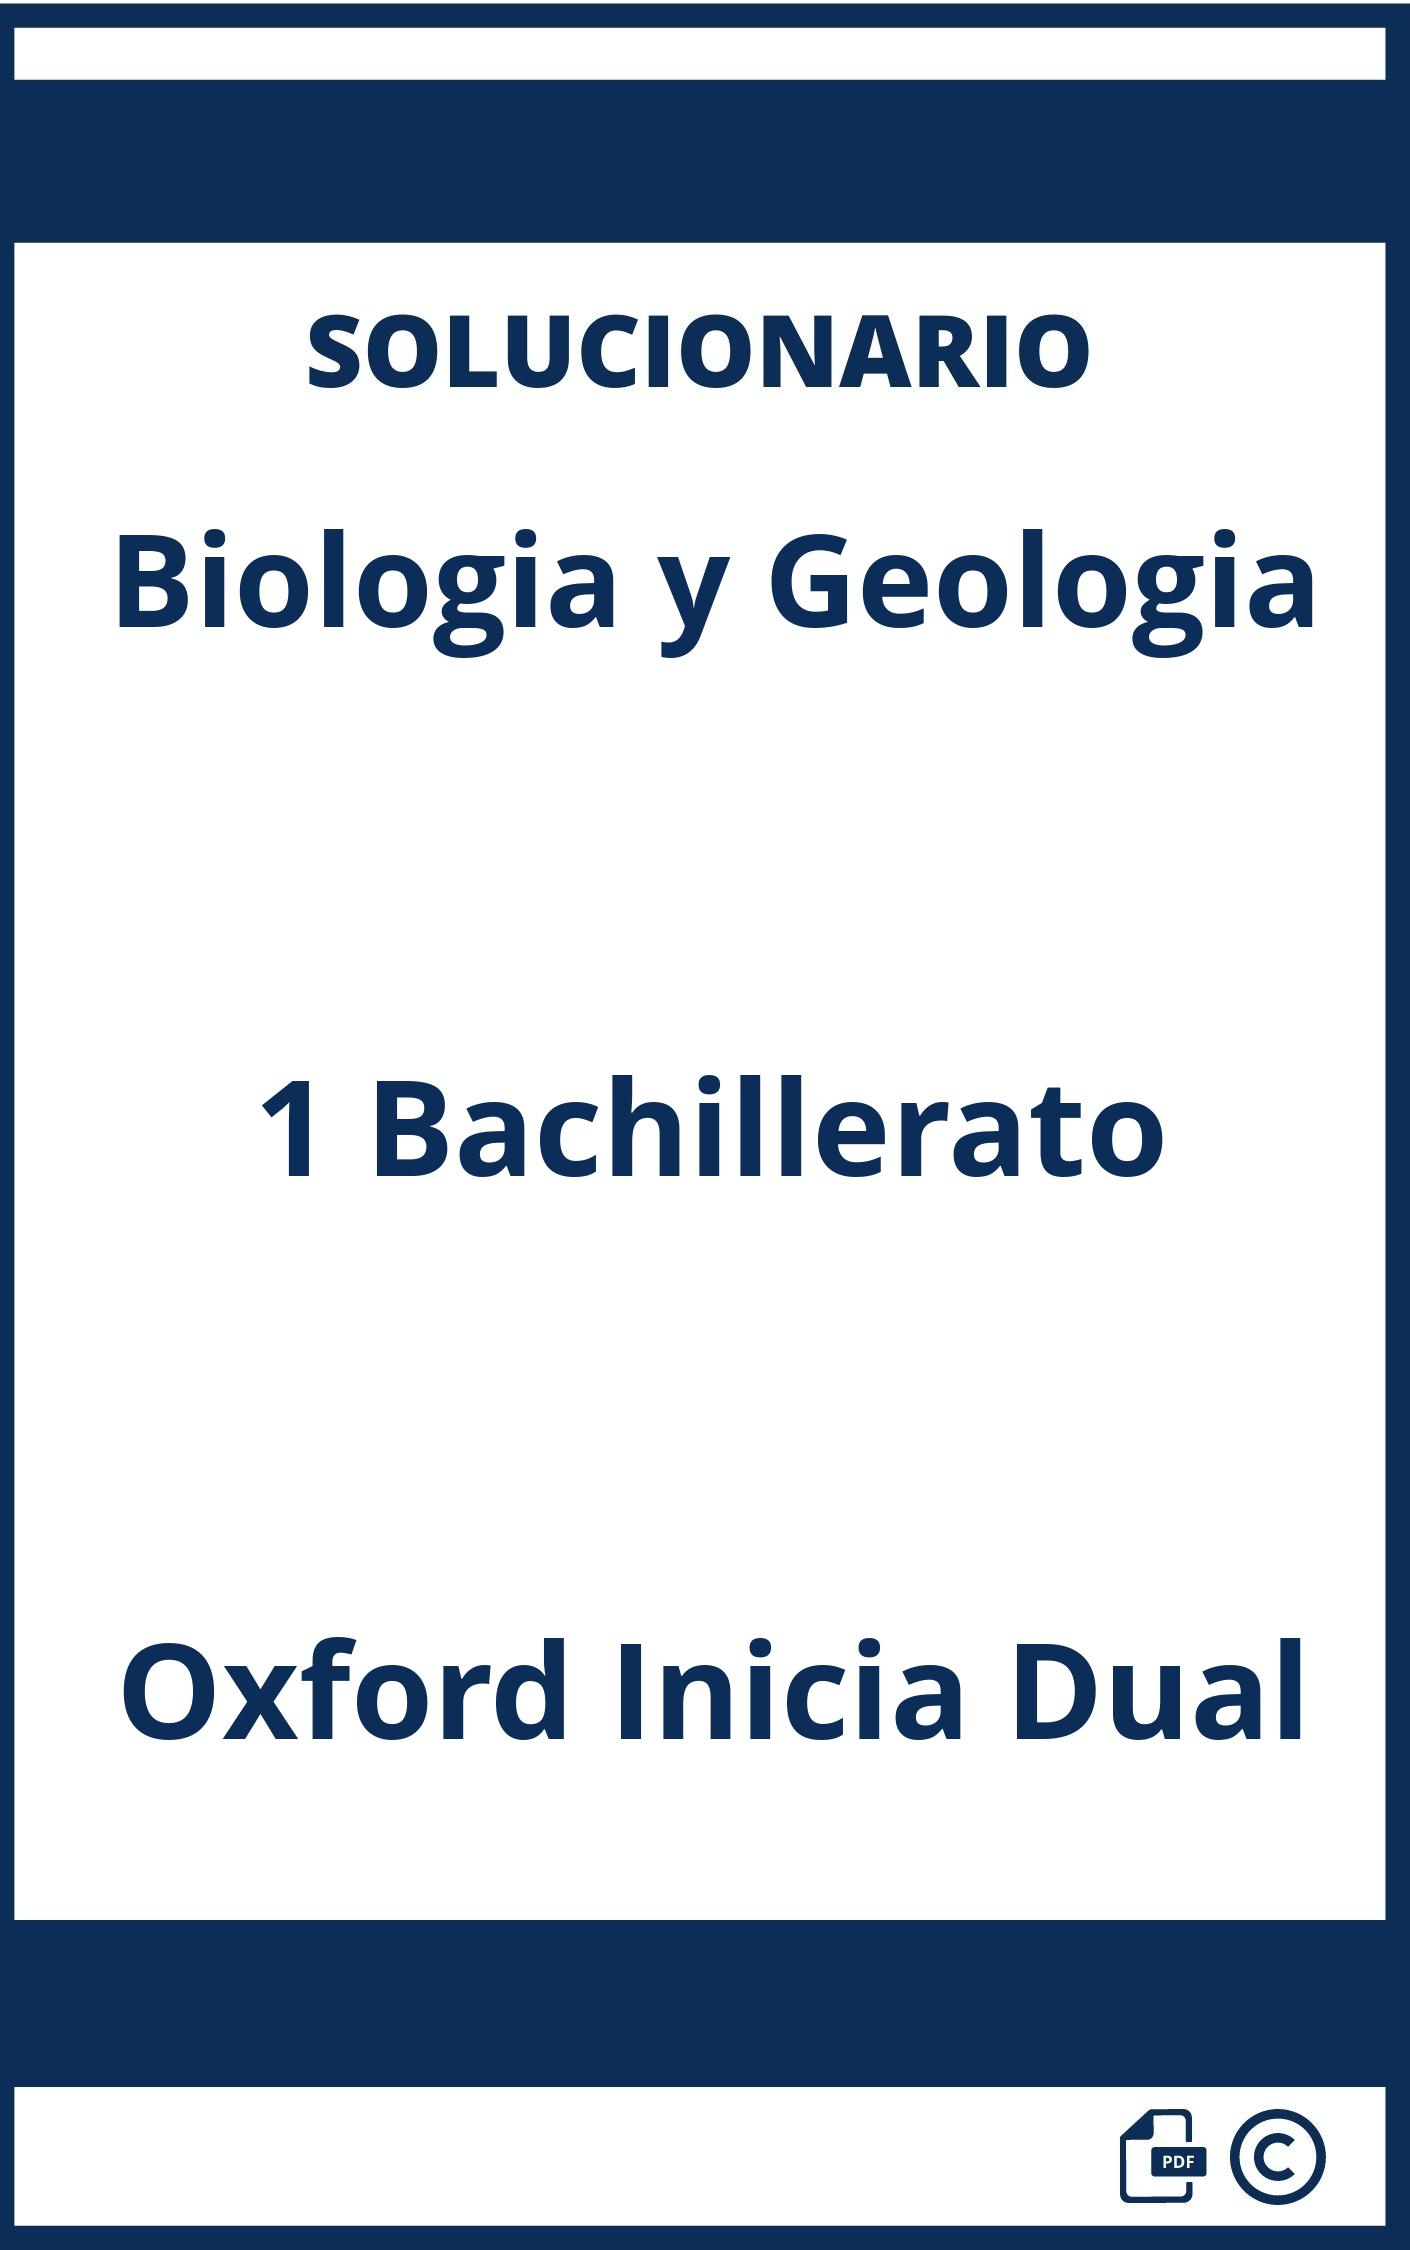 Solucionario Biologia y Geologia 1 Bachillerato Oxford Inicia Dual